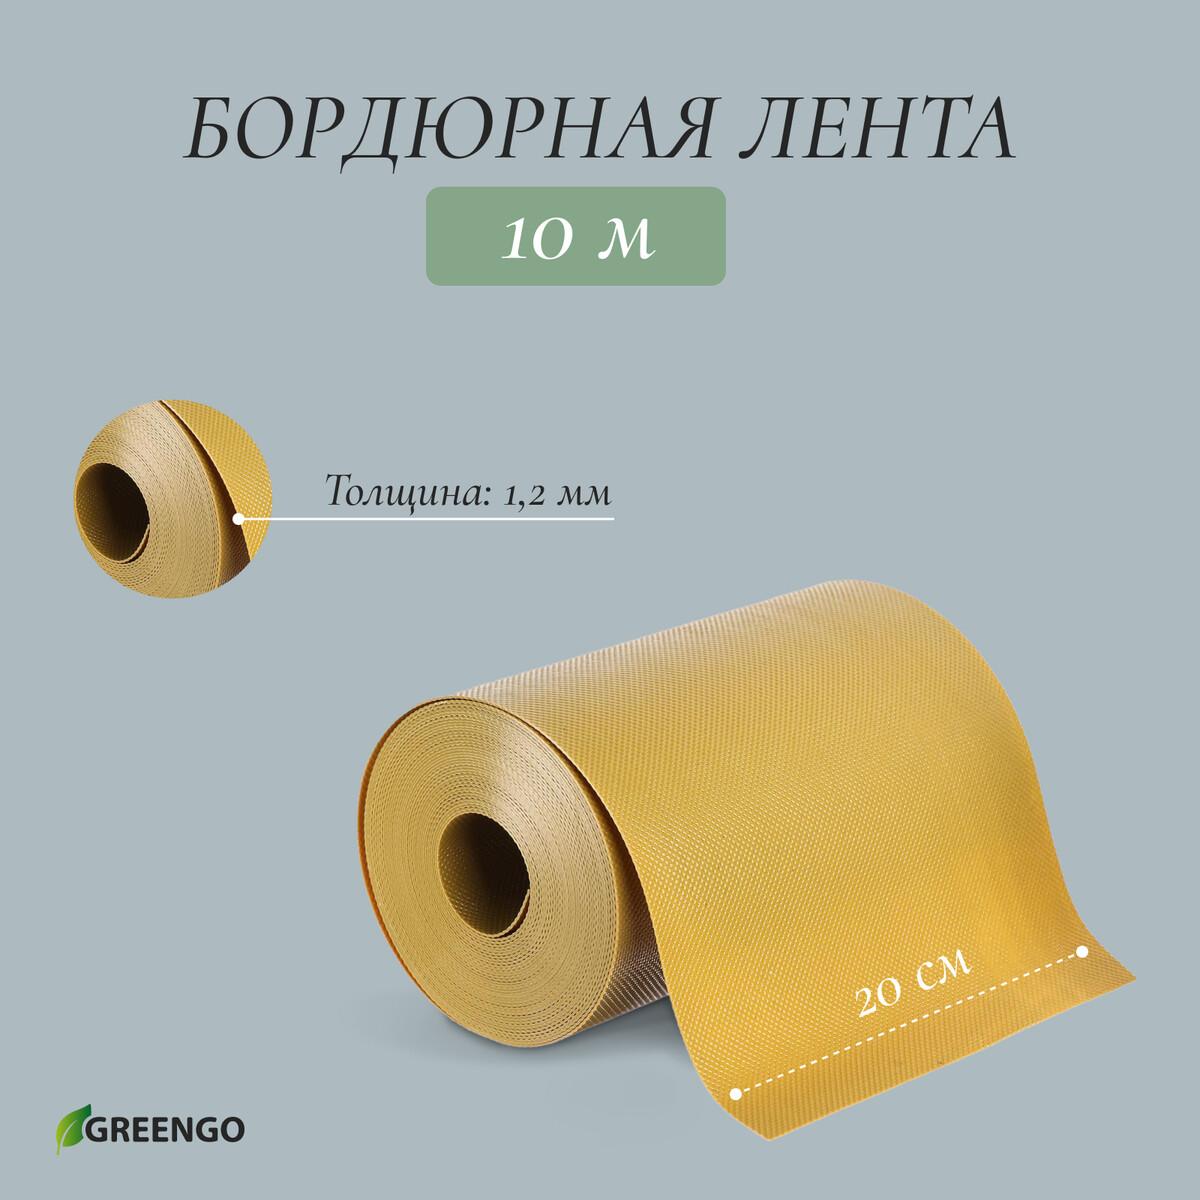 Лента бордюрная, 0.2 × 10 м, толщина 1.2 мм, пластиковая, желтая, greengo лента бордюрная 0 15 × 9 м толщина 1 2 мм пластиковая фигурная коричневая greengo